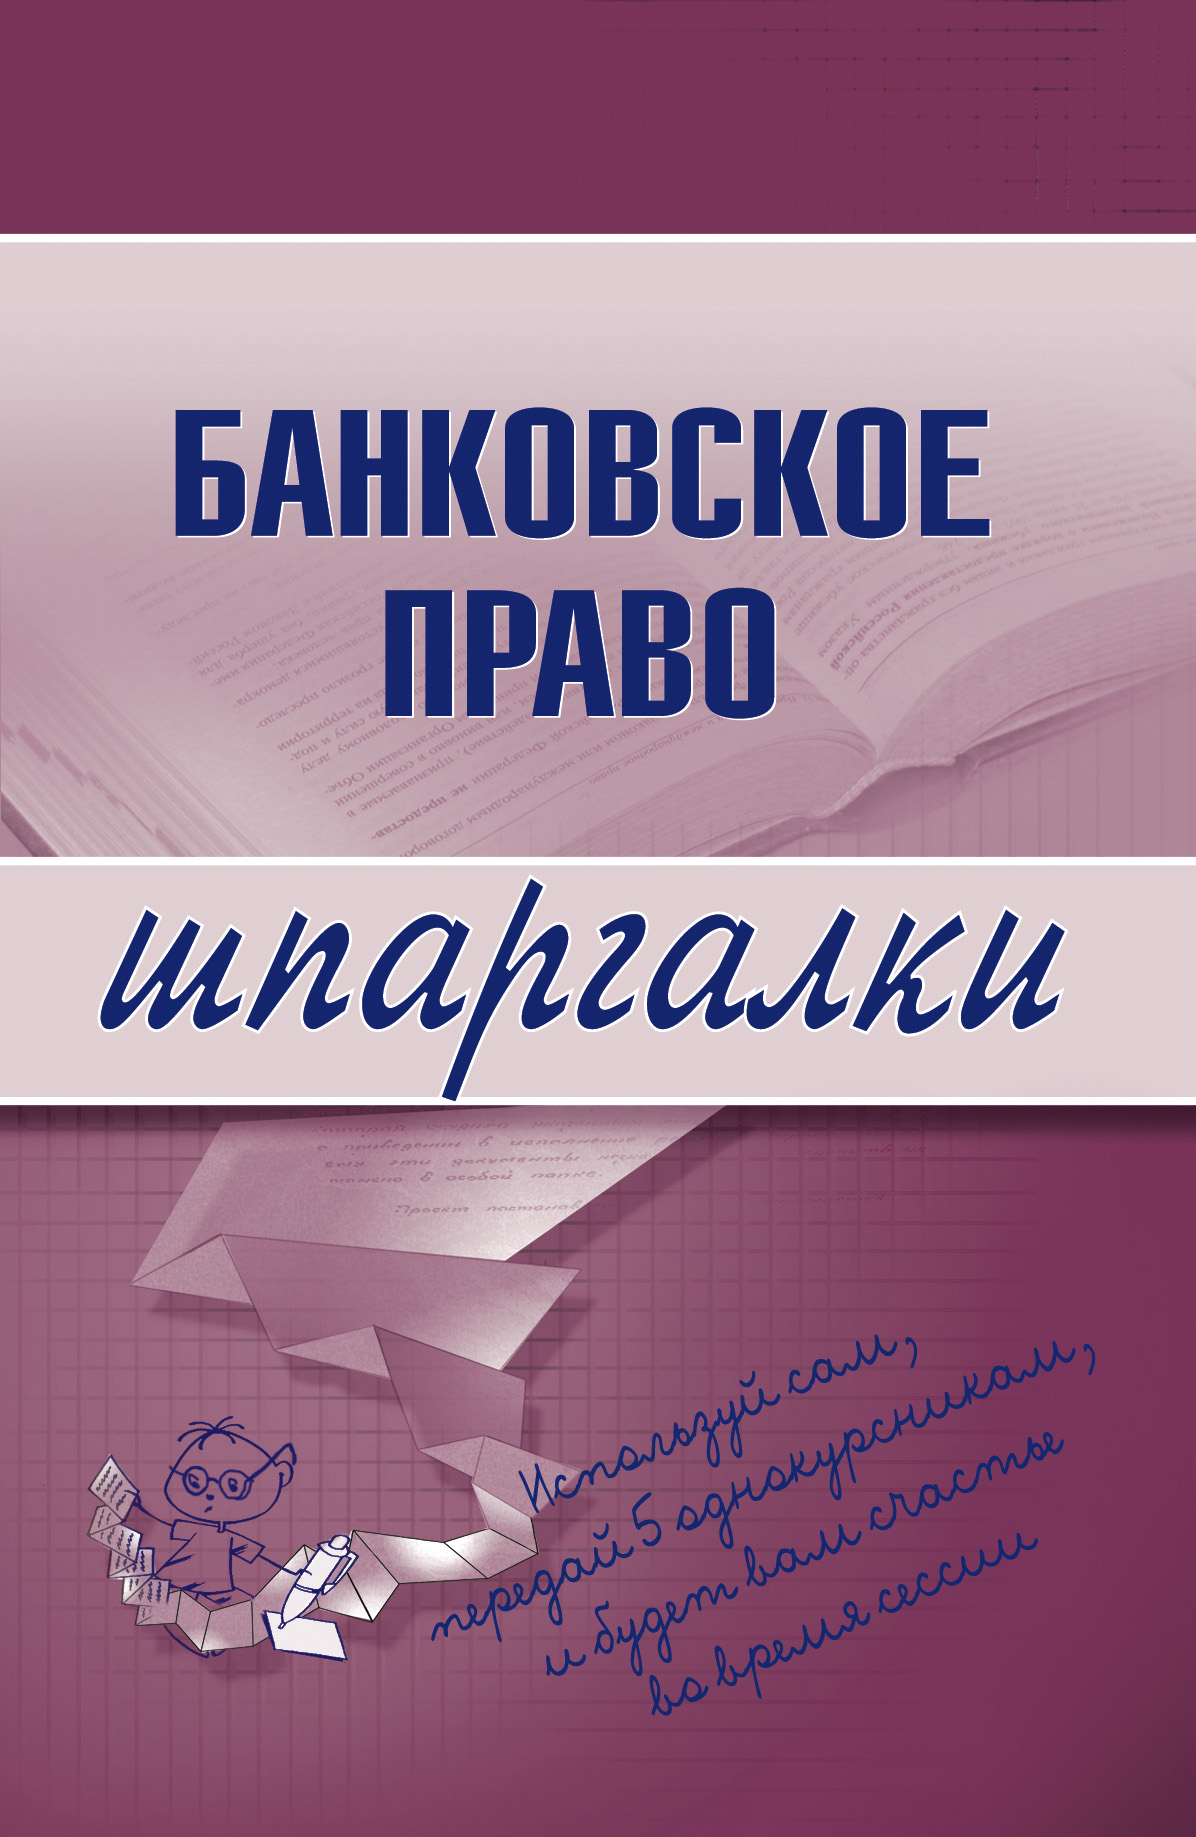 Книга Шпаргалки Банковское право созданная  может относится к жанру банковское дело. Стоимость электронной книги Банковское право с идентификатором 179247 составляет 44.95 руб.